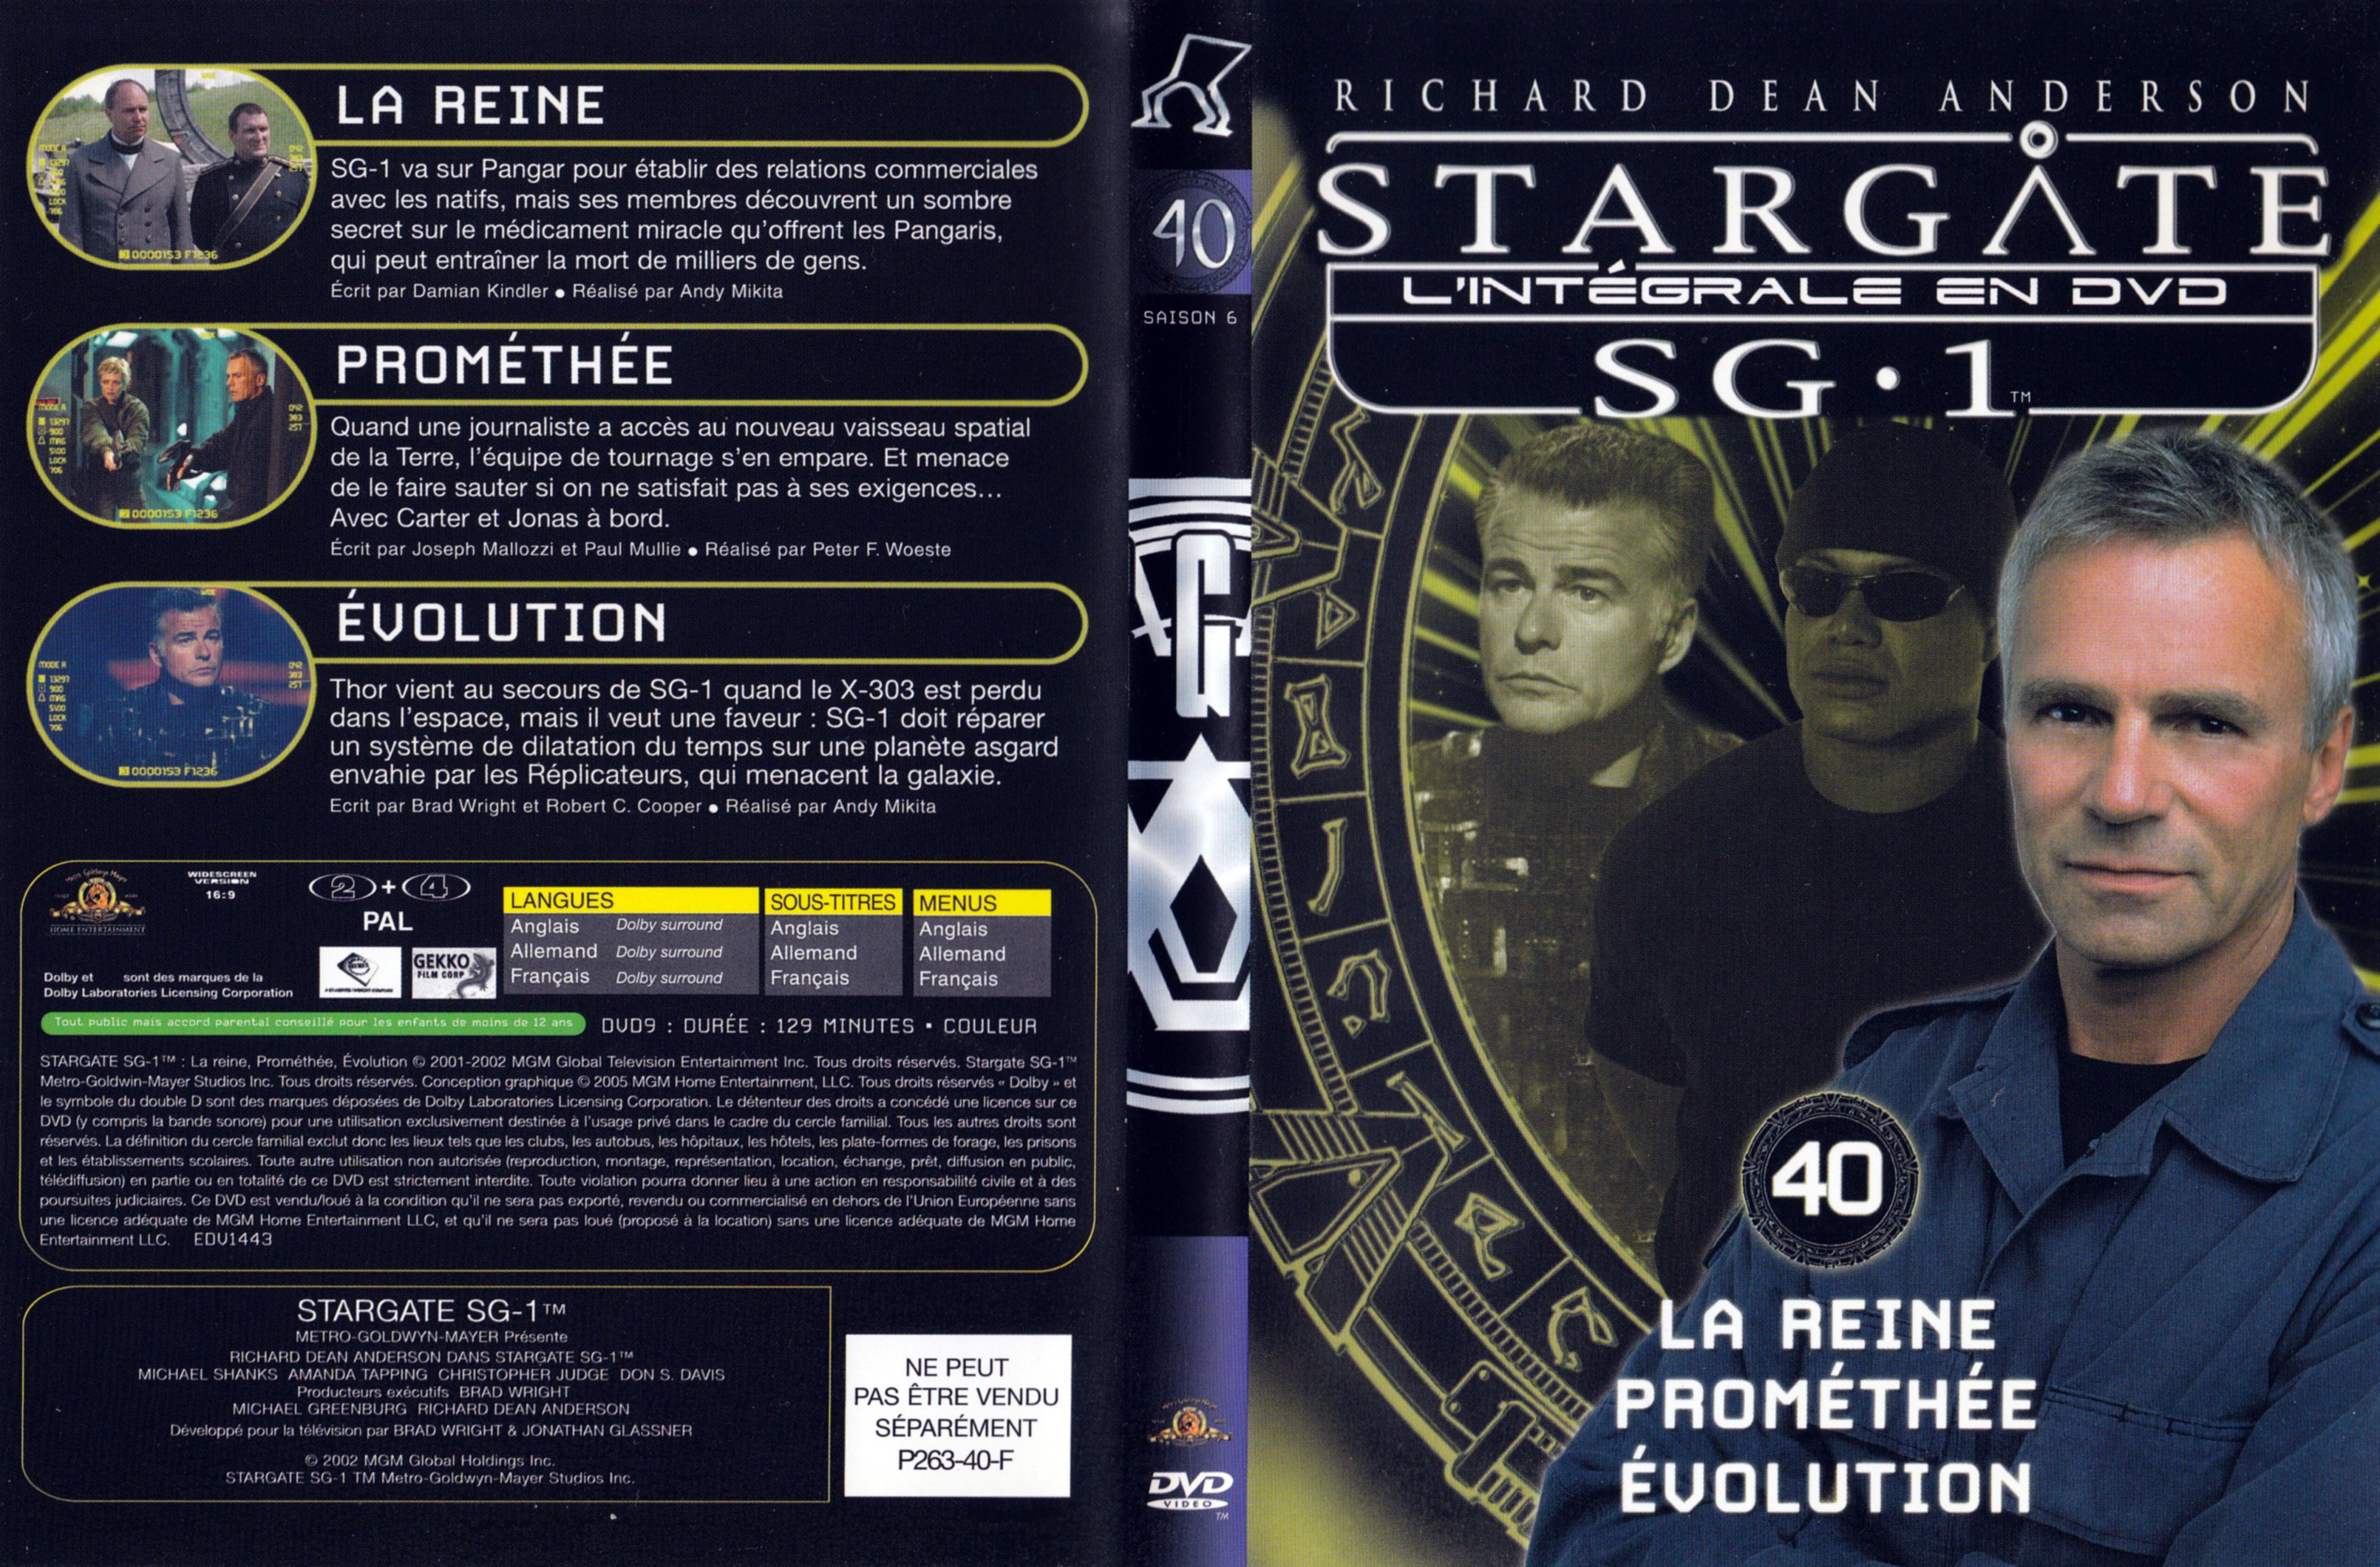 Jaquette DVD Stargate SG1 Intgrale Saison 6 vol 40